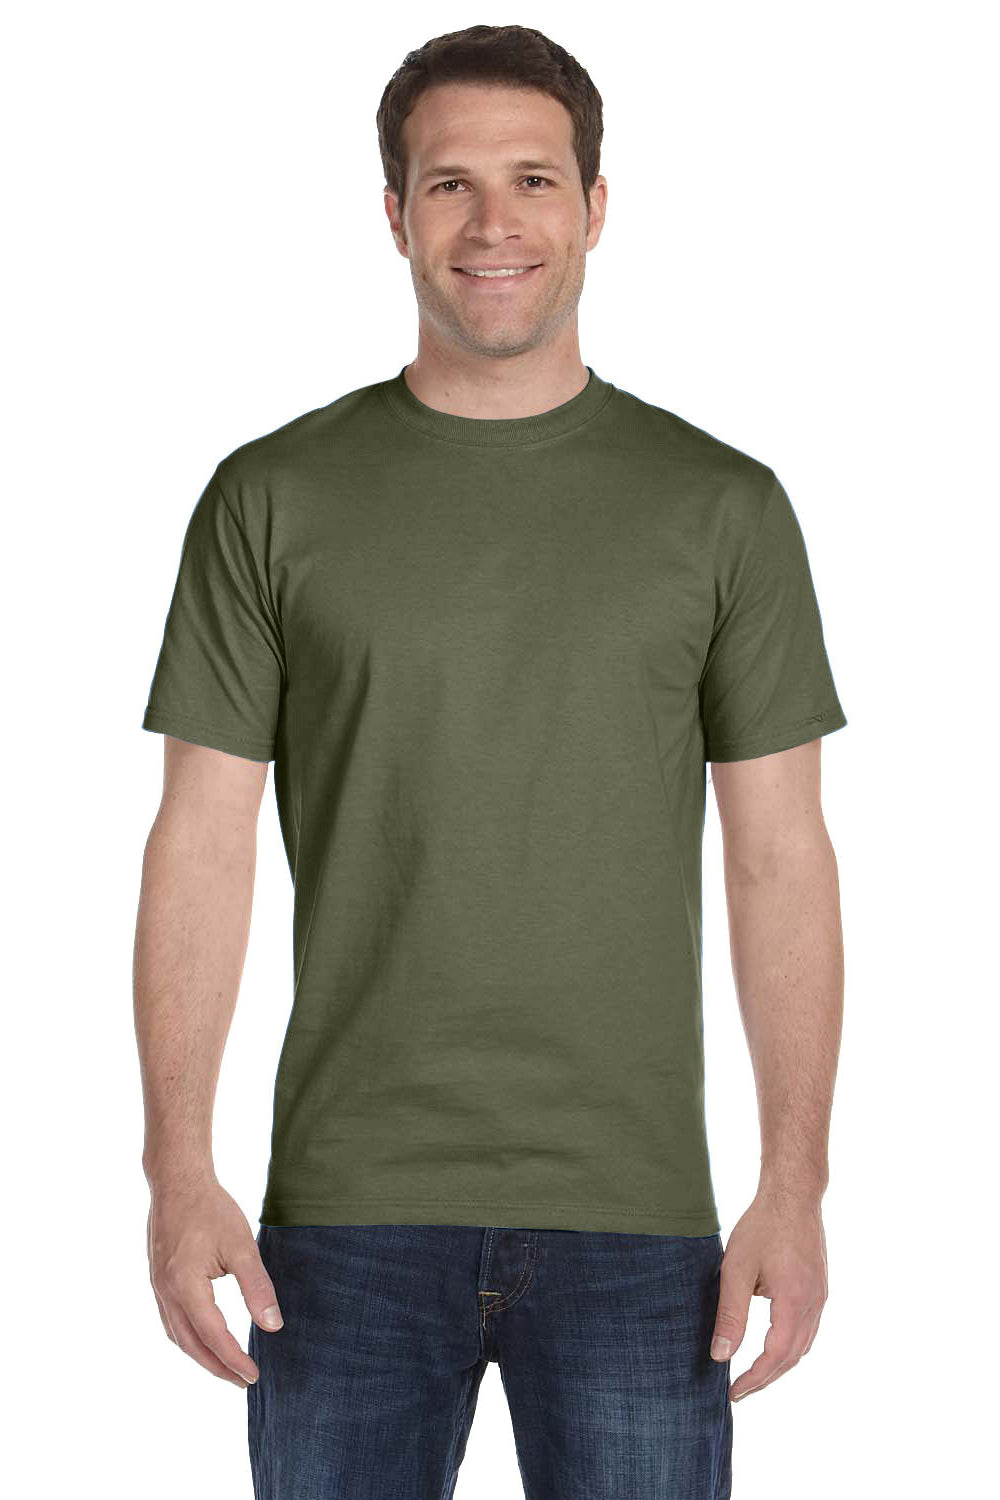 Hanes 5280 Mens ComfortSoft Short Sleeve Crewneck T-Shirt Fatigue Green Front